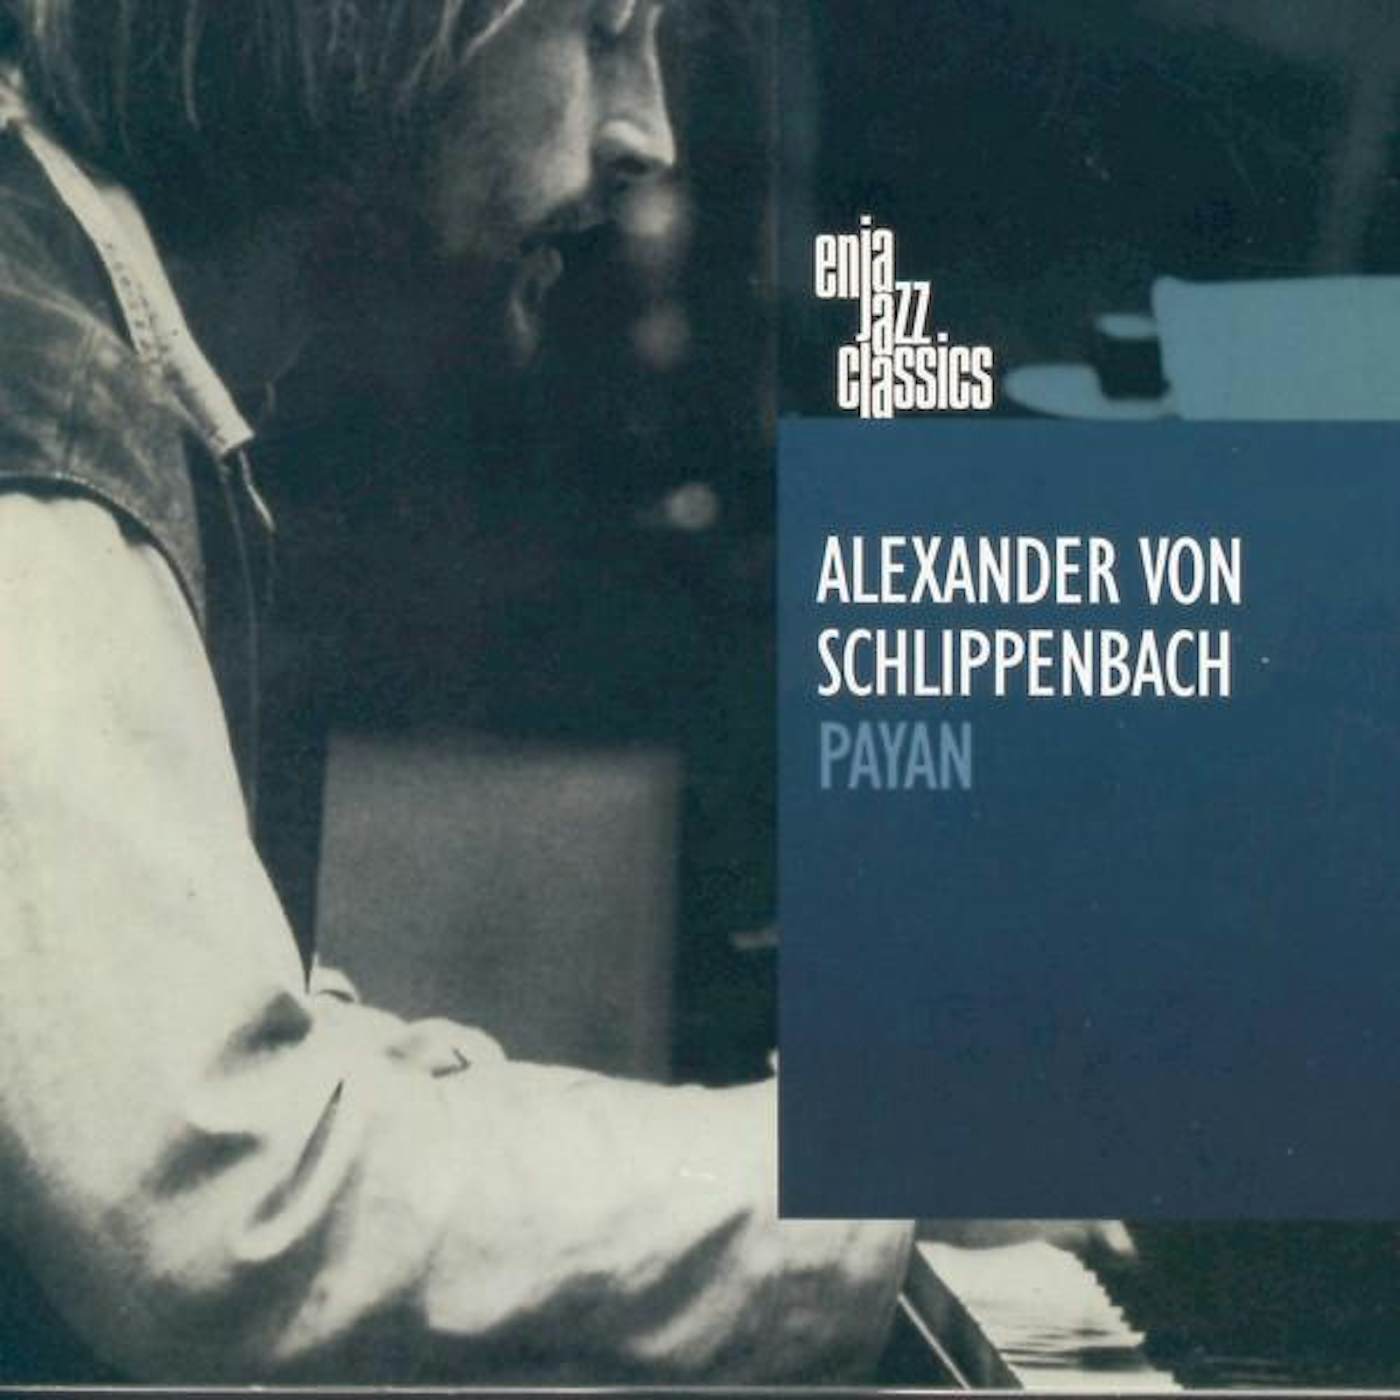 Alexander von Schlippenbach